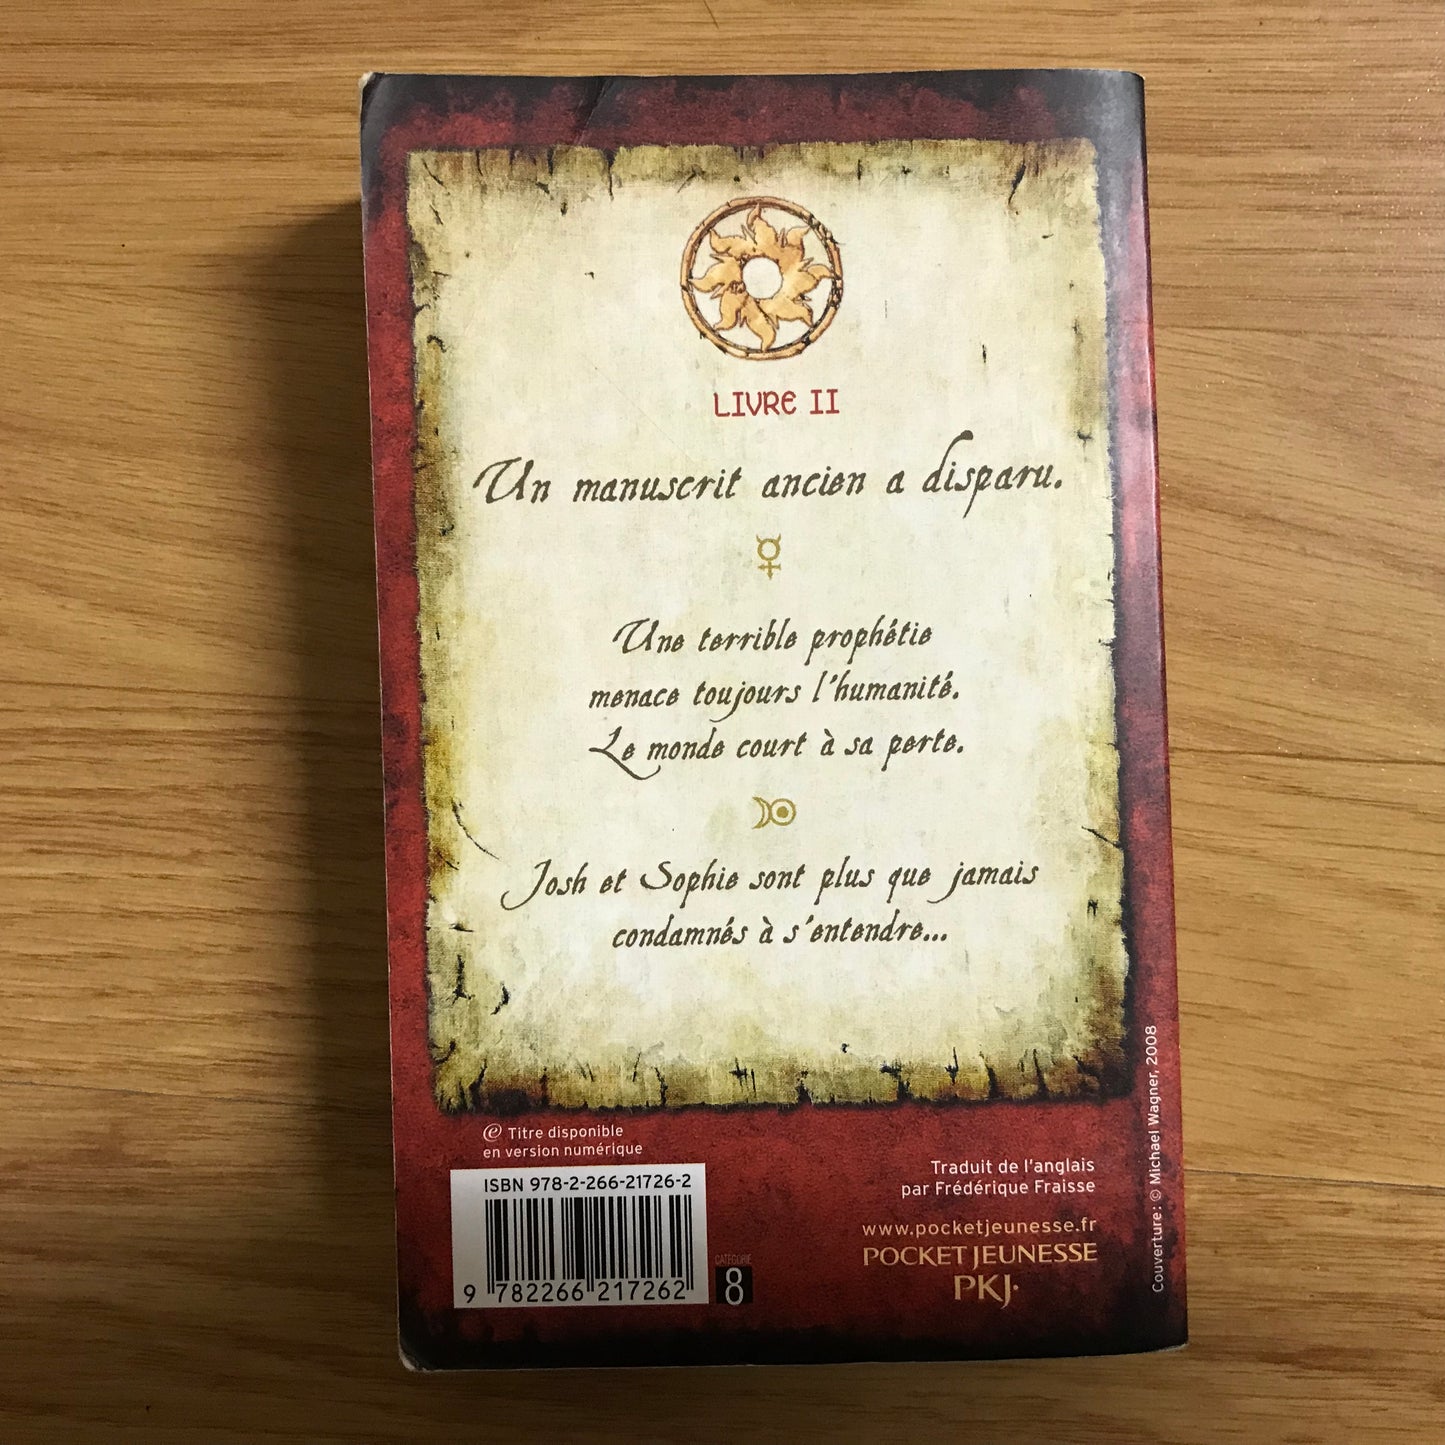 Les secrets de l’immortel Nicolas Flamel 2, Le magicien - Michael Scott